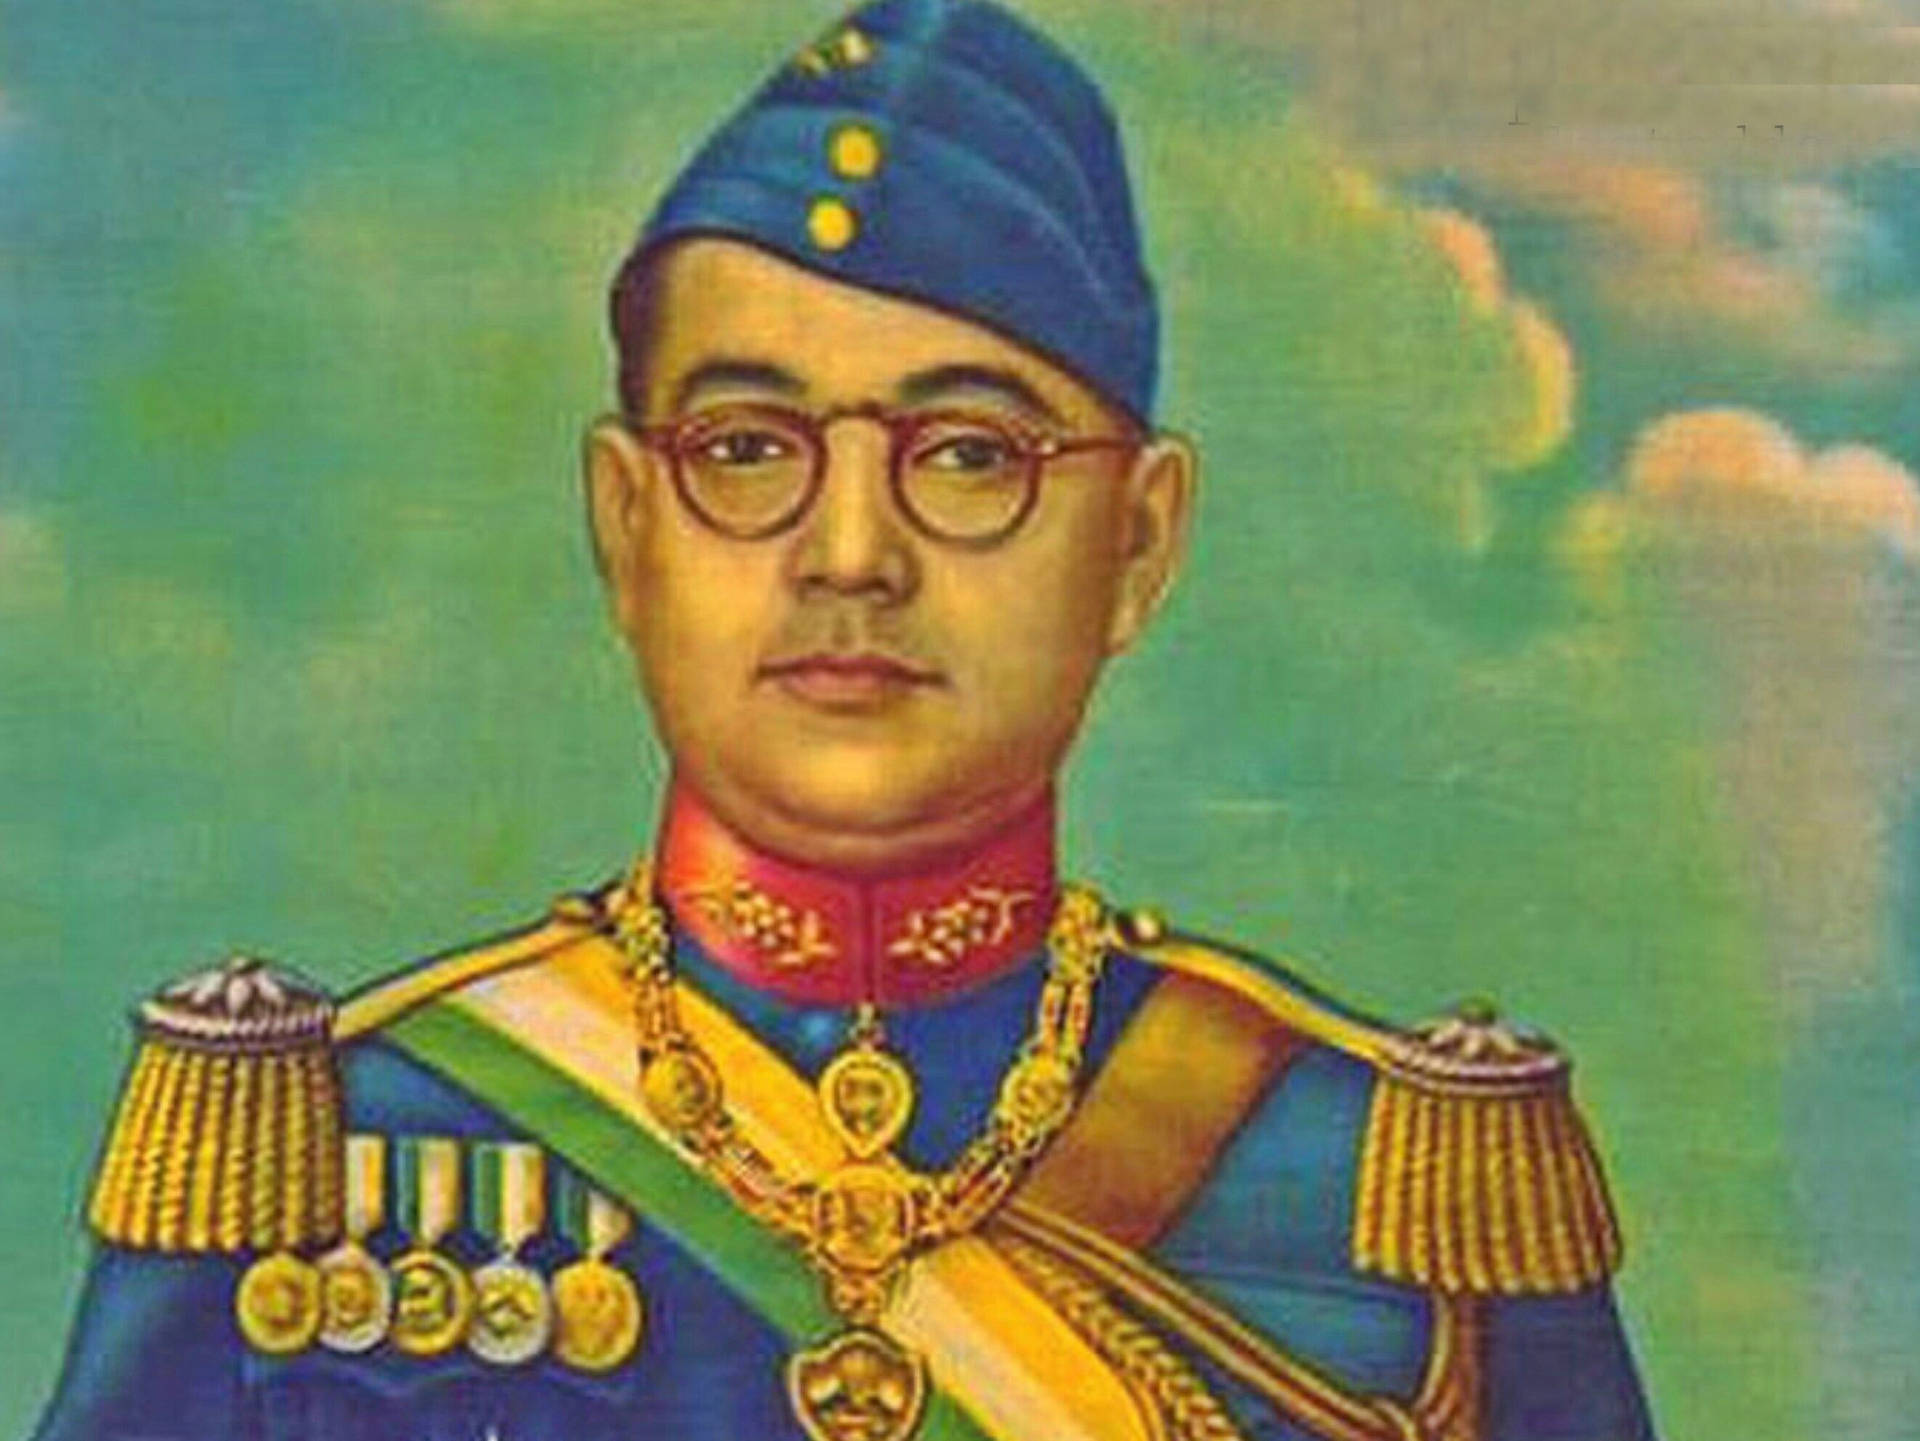 Portrait Painting Of Netaji Bose In Blue Uniform